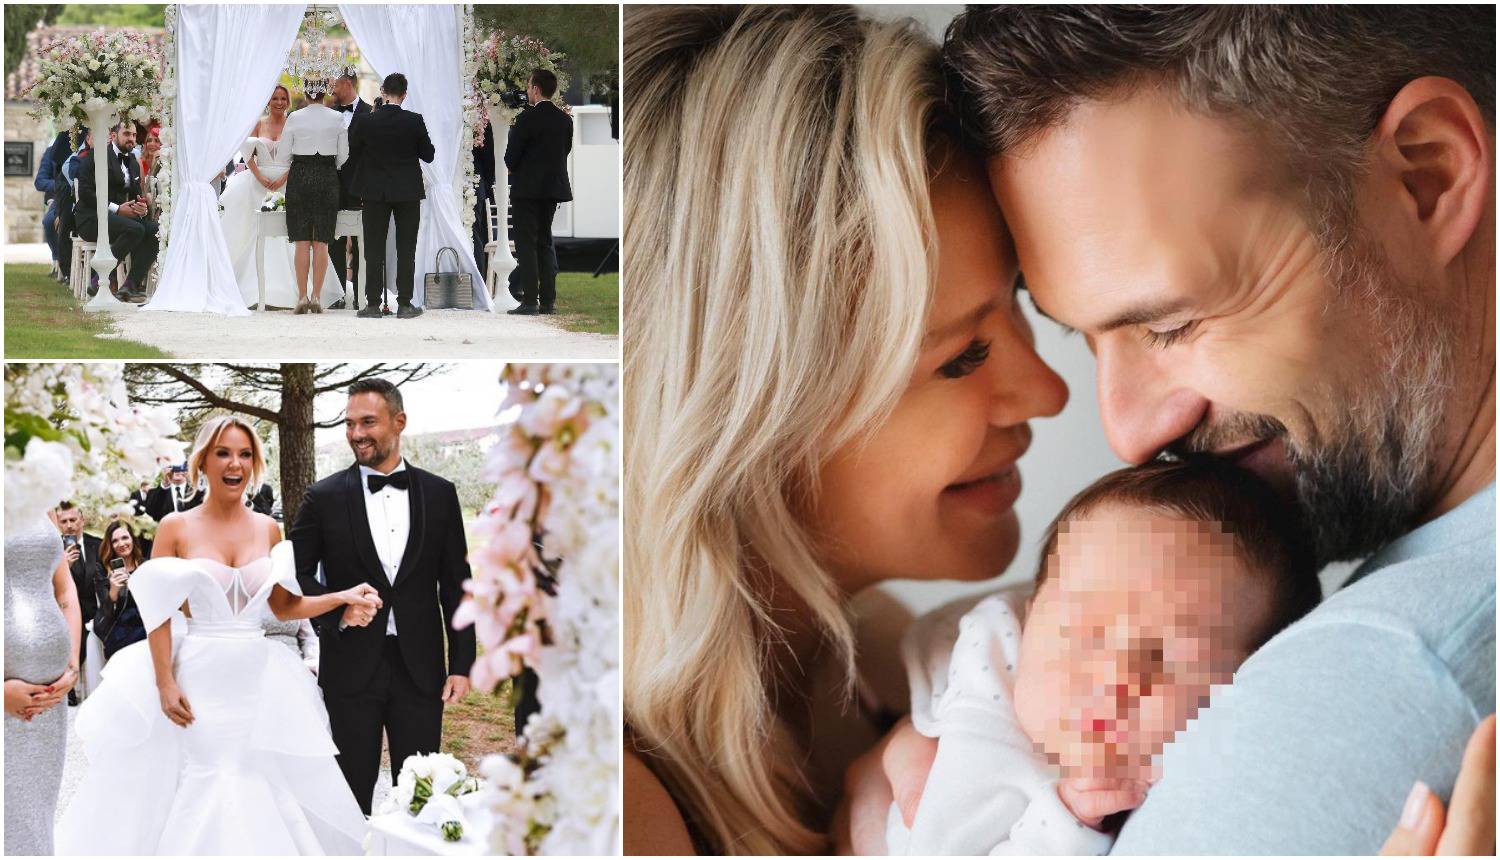 Maja objavila neviđene fotke s vjenčanja: 'Ljubavi, sretna ti druga godina najljepšeg braka'